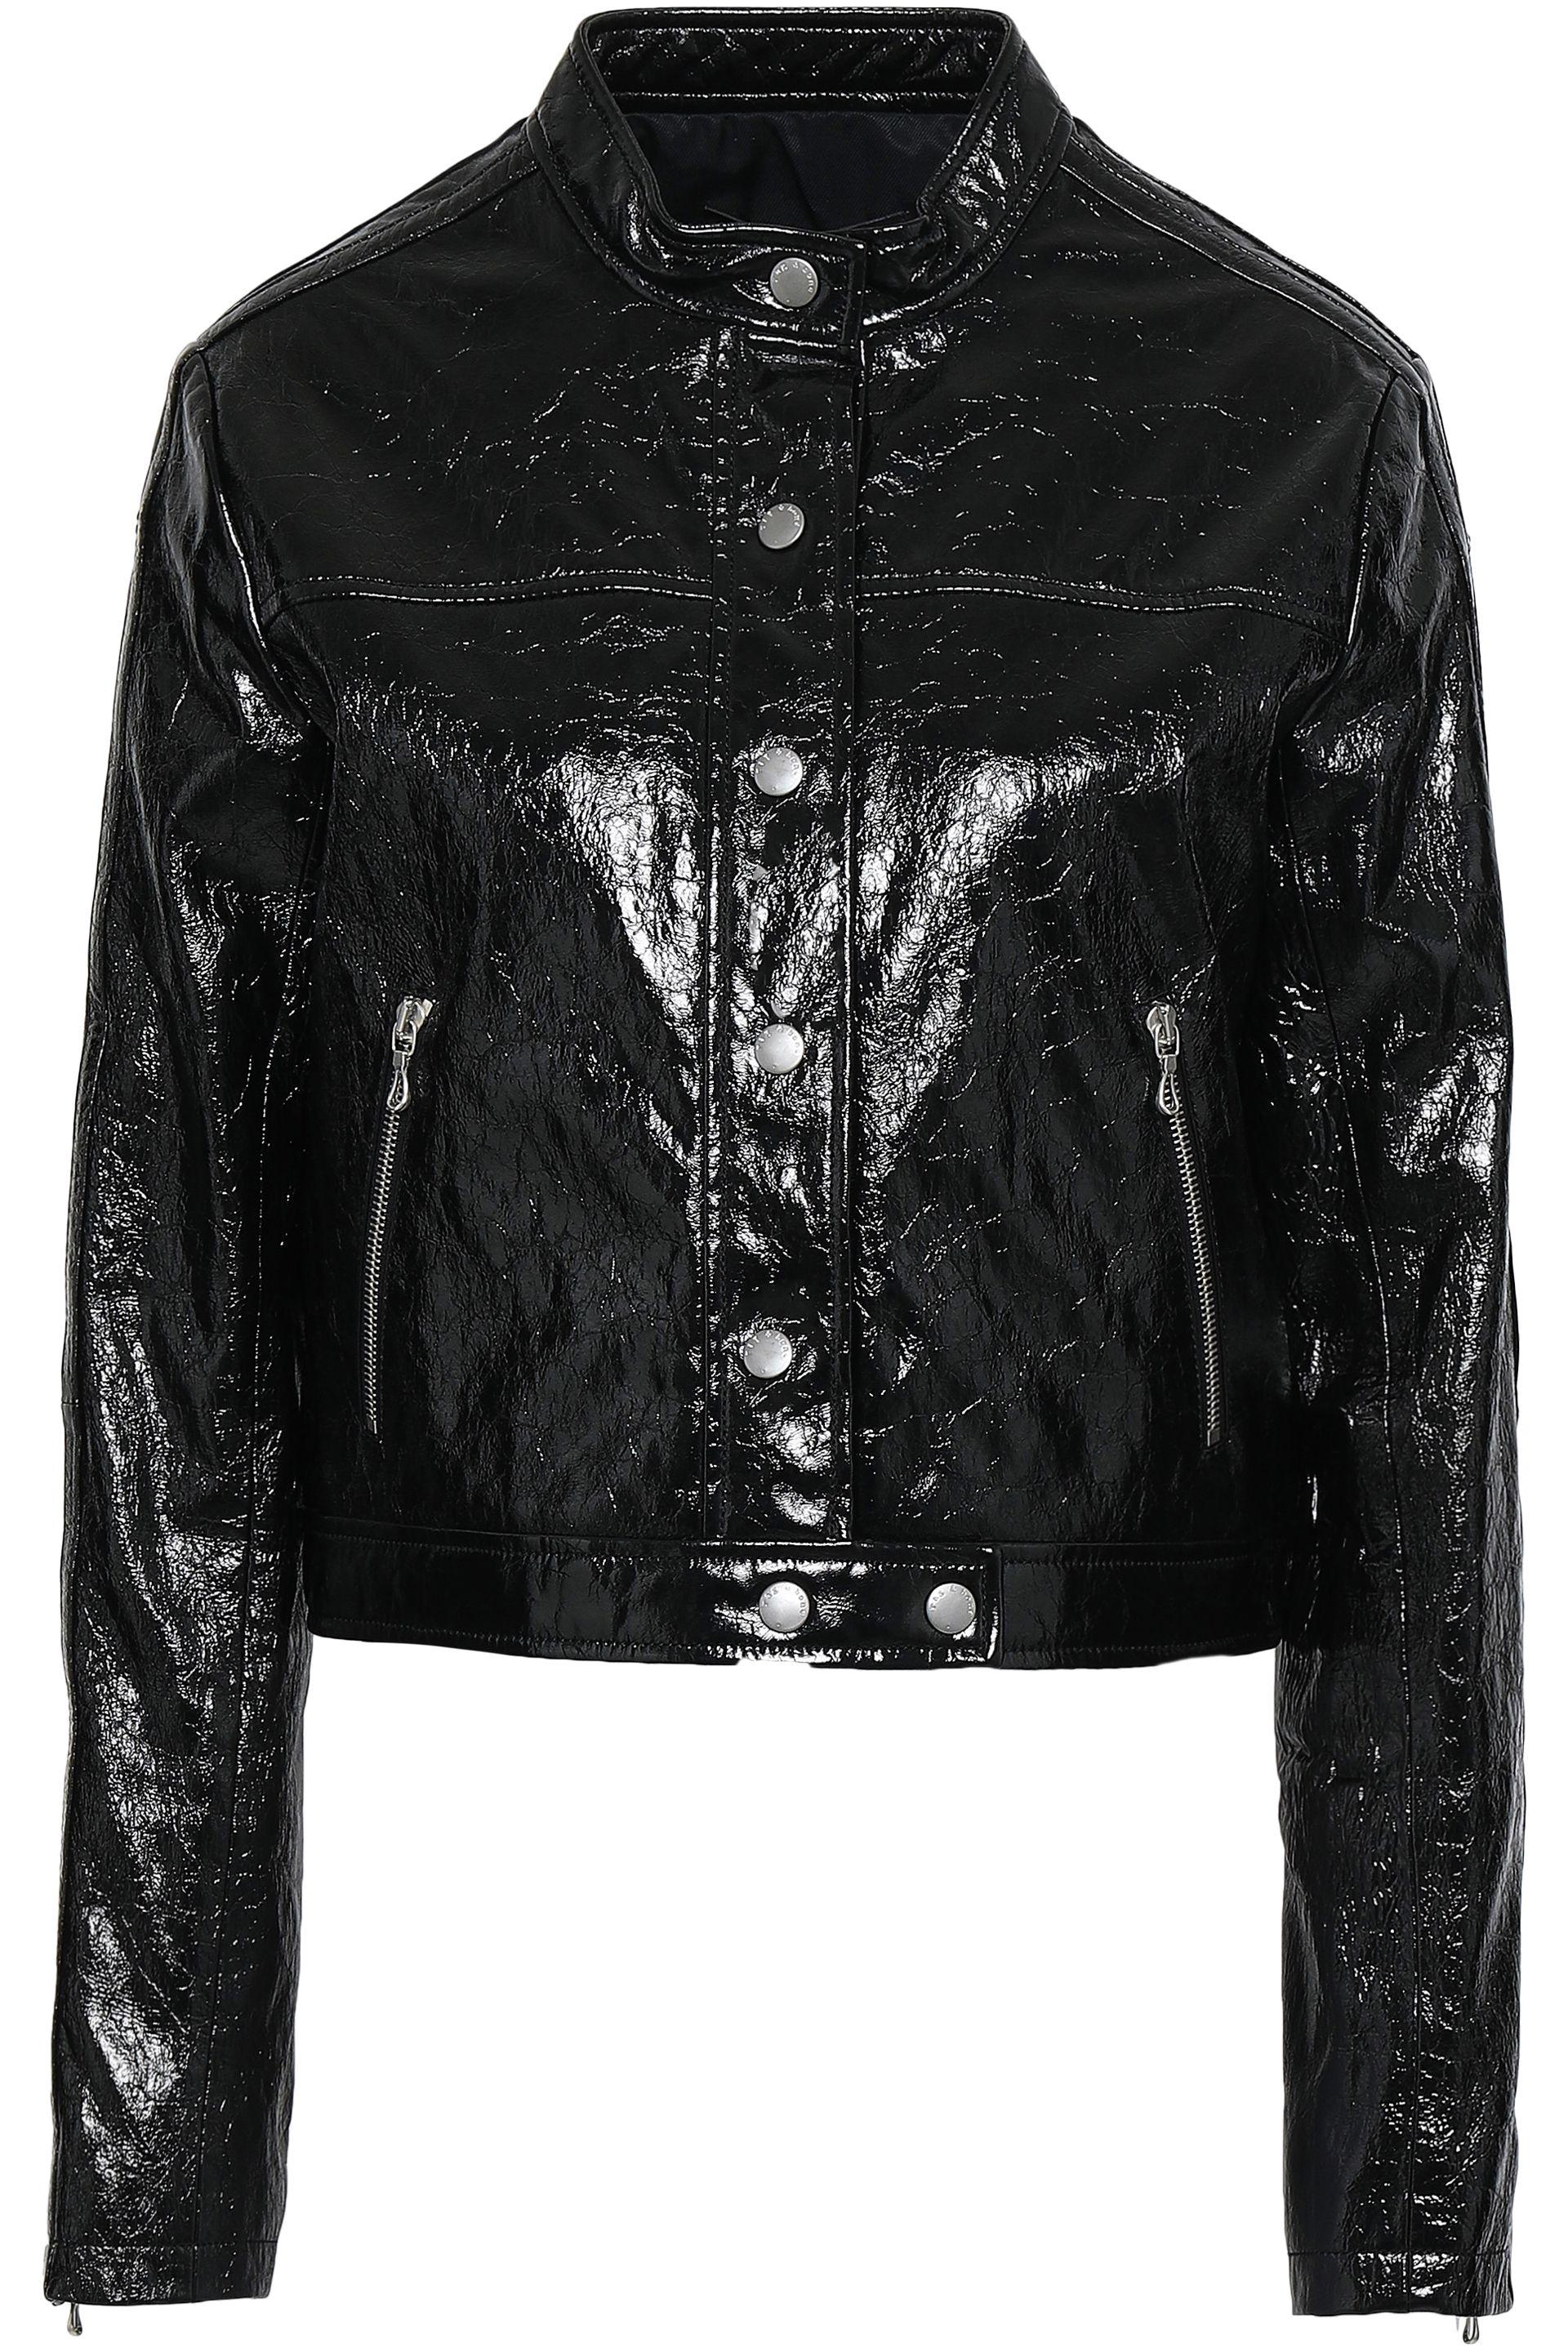 Rag & Bone Toni Cropped Cracked Patent-leather Jacket Black - Save 56% ...